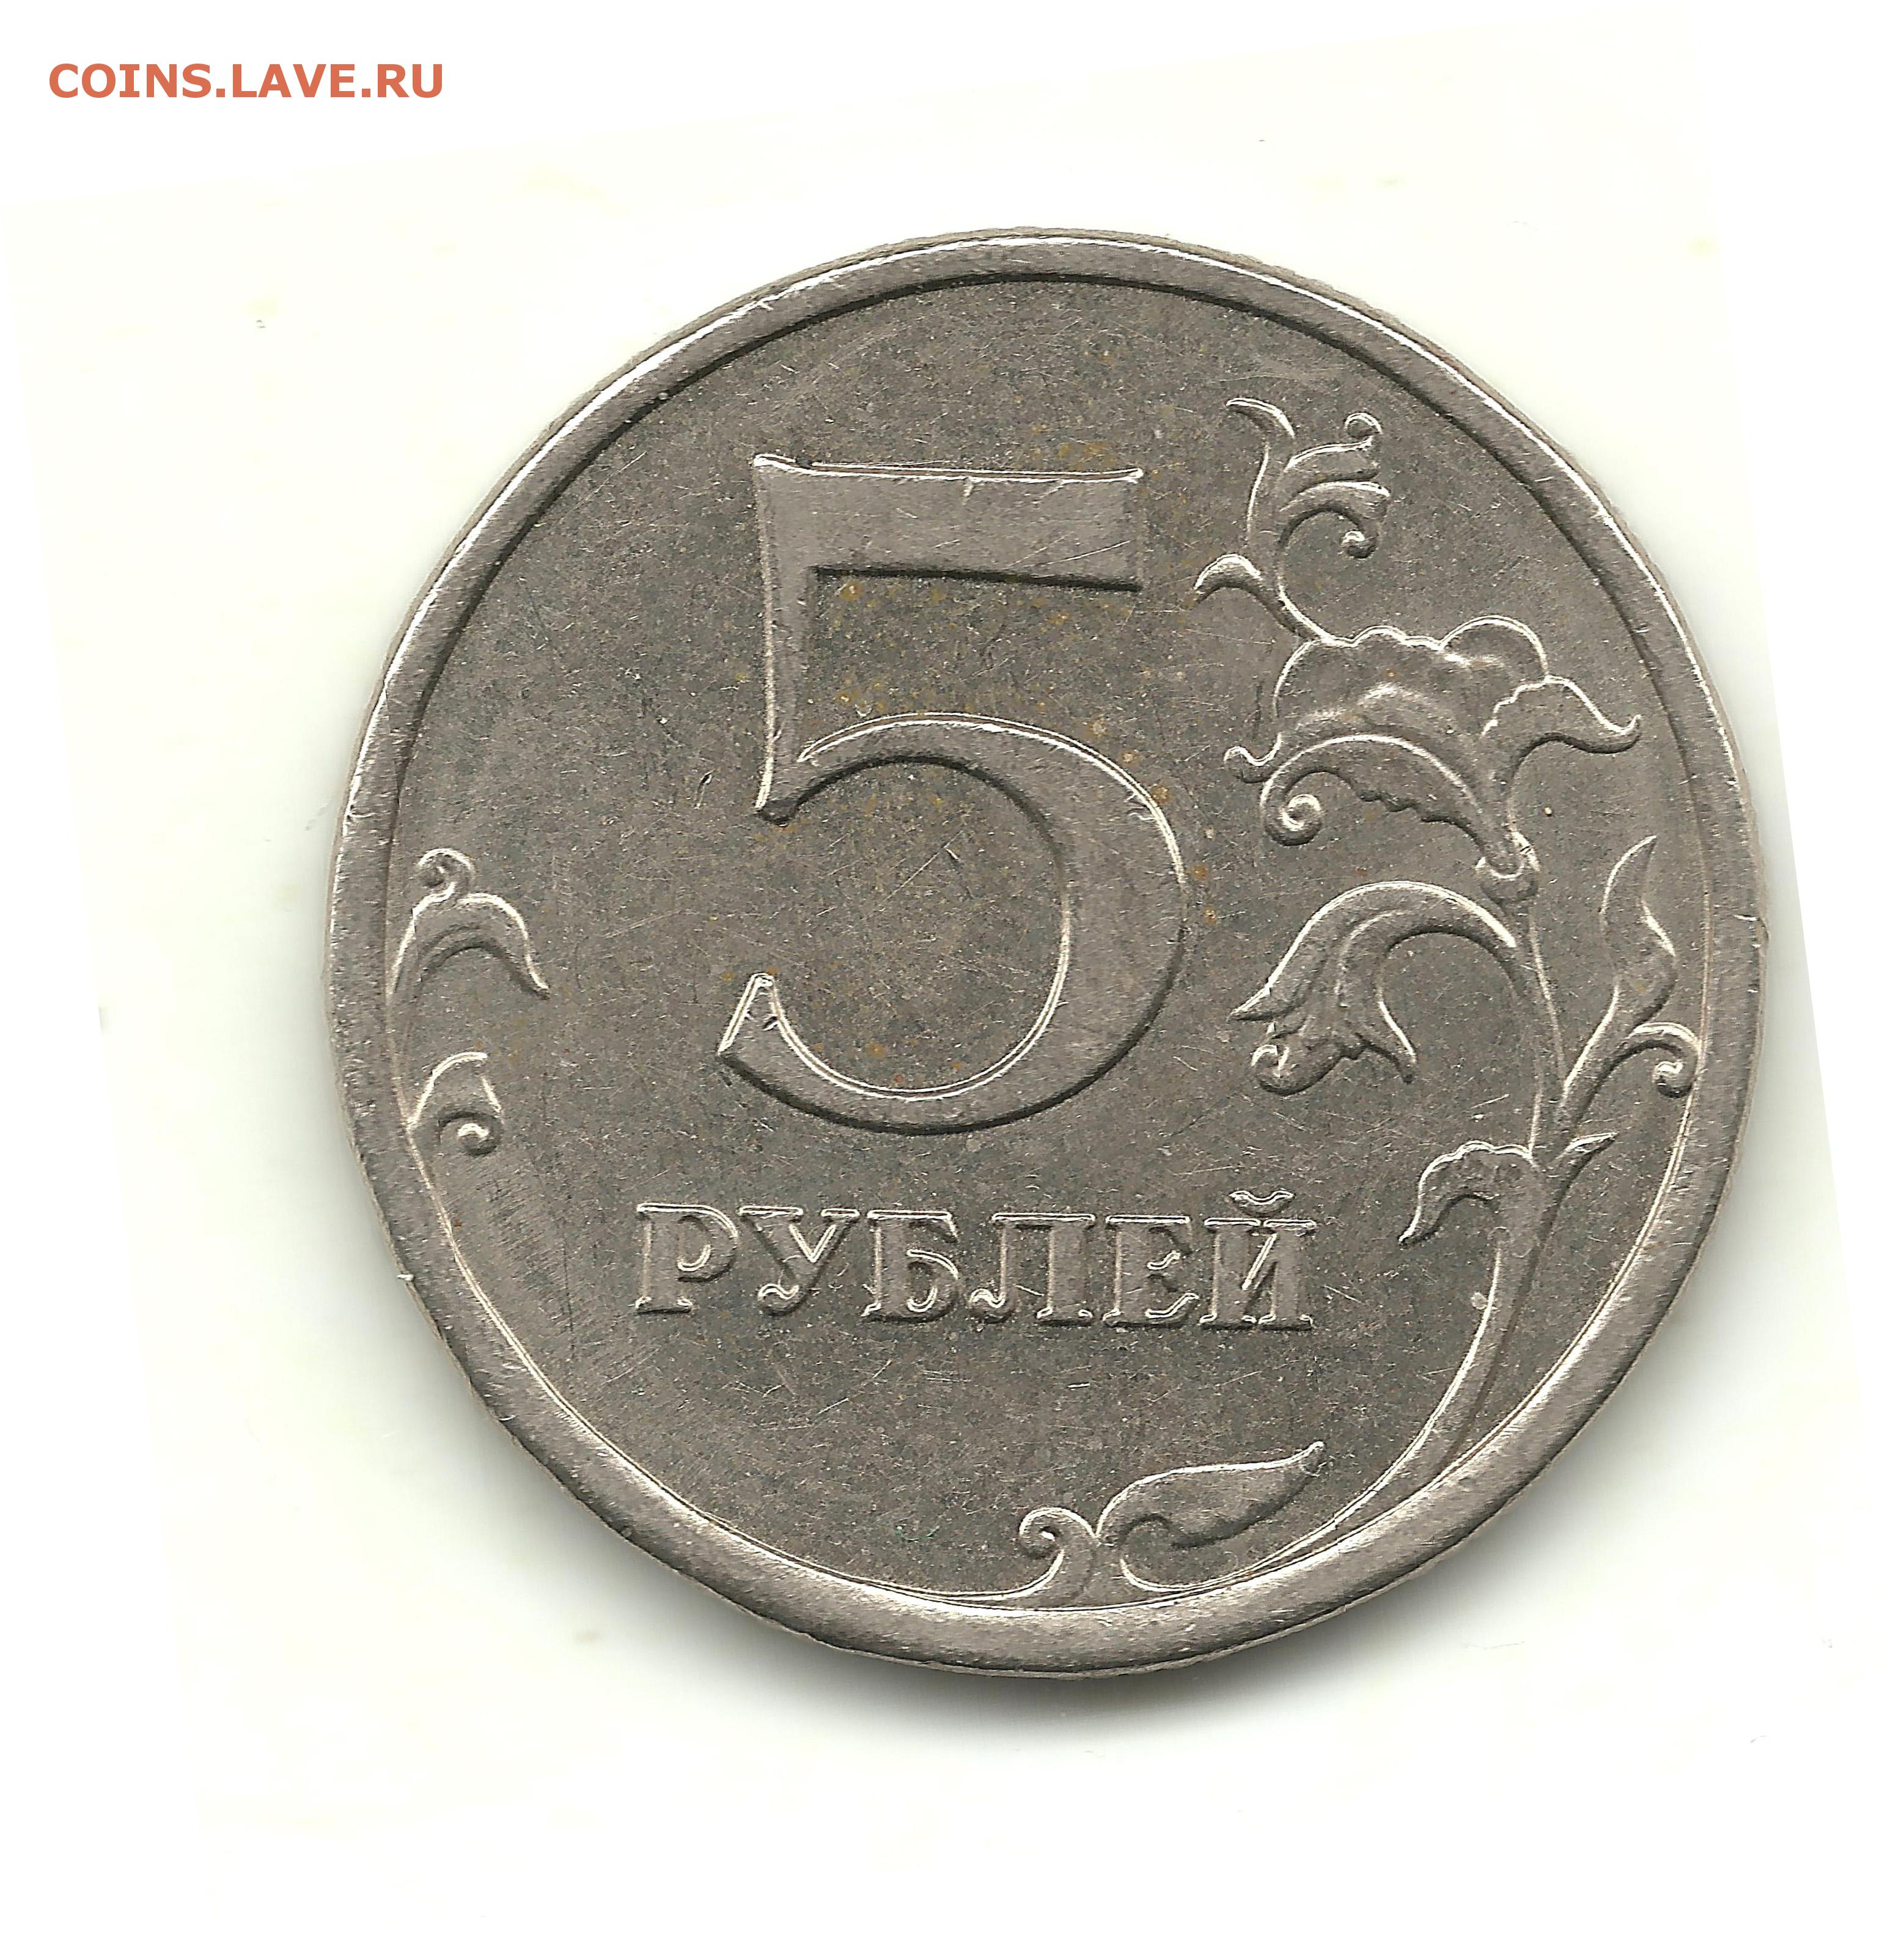 5 рублей немагнитная. Немагнитные монеты. Российские монеты 2008. 5 Рублей 2008 ММД. 5 Рублей 2009 магнитная и немагнитная.